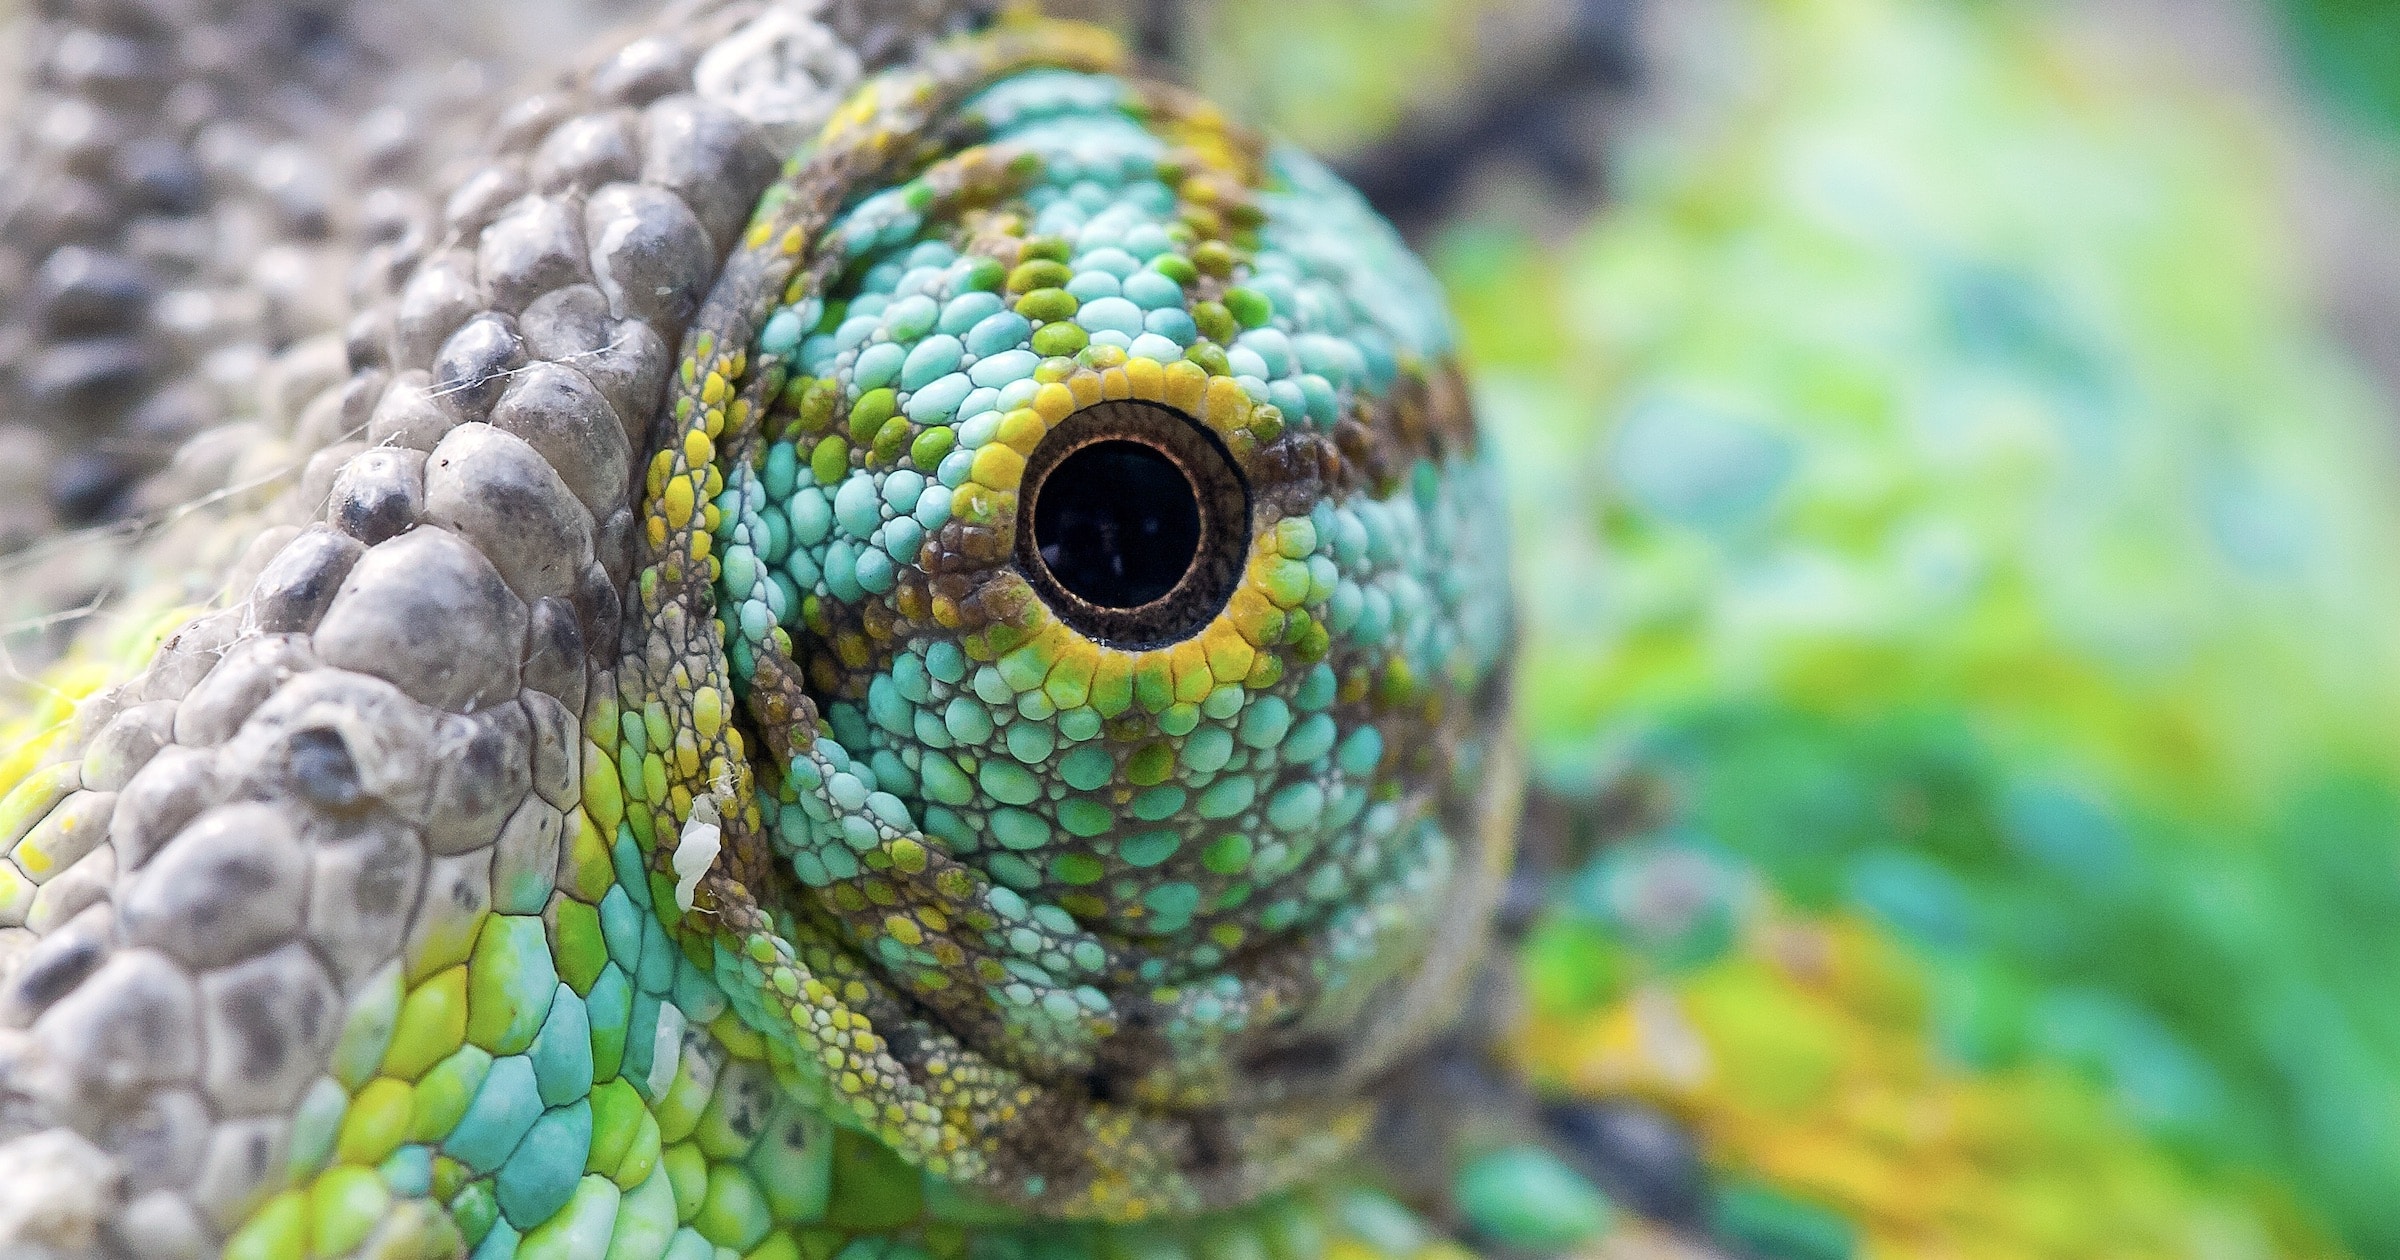 Chameleon Vision — A Unique Marvel of Design